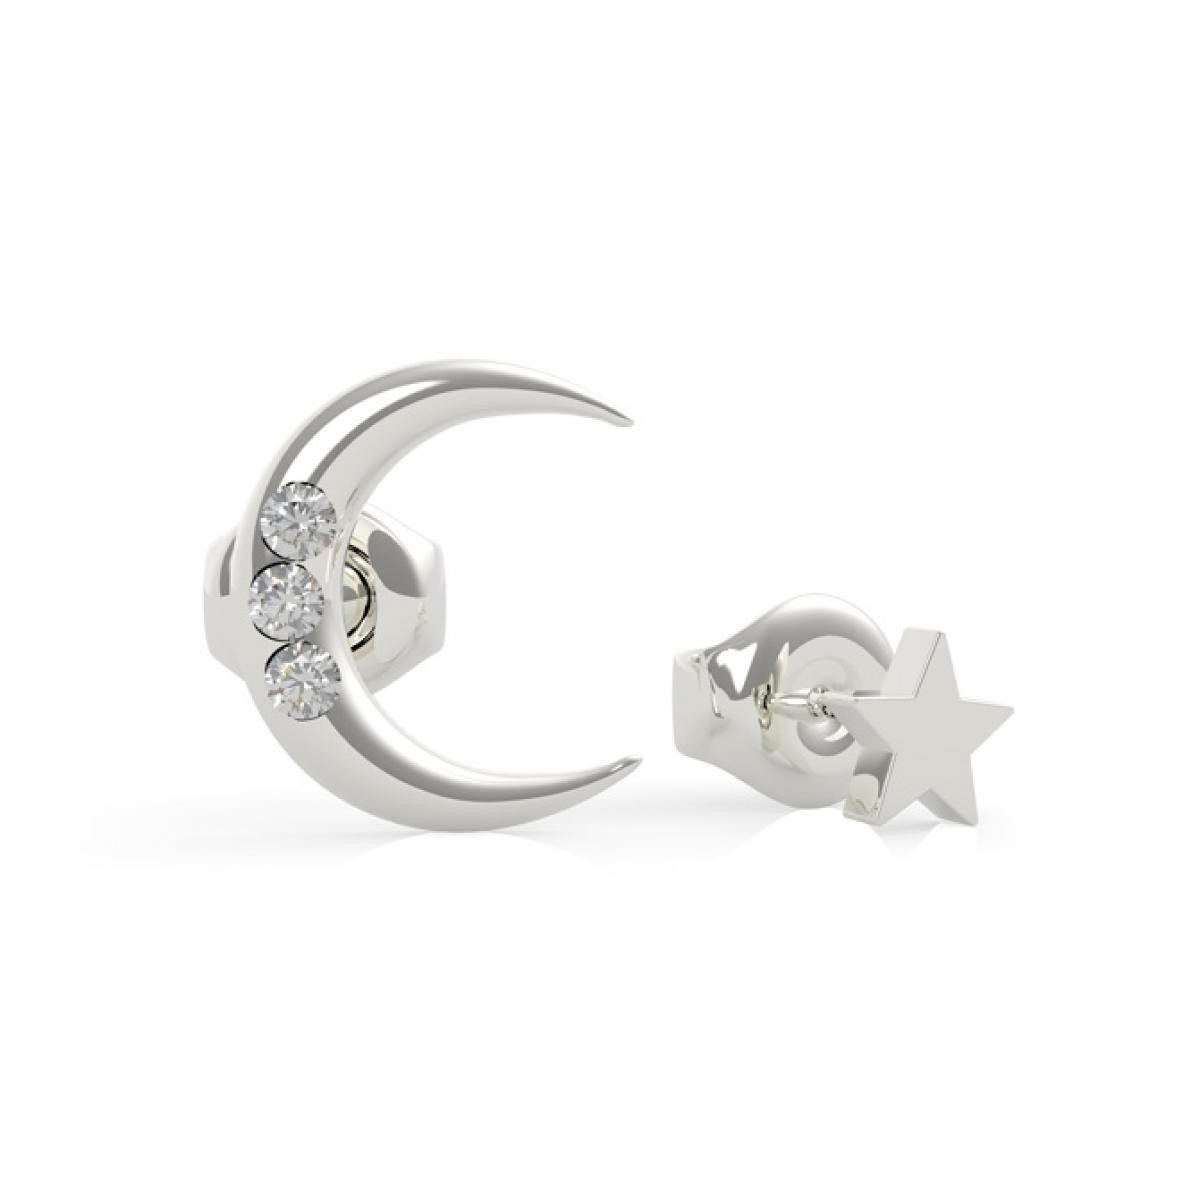 Promo : Boucles d'Oreilles Guess GET LUCKY UBE29009 - puces dépareillées acier rhodié lune et étoile